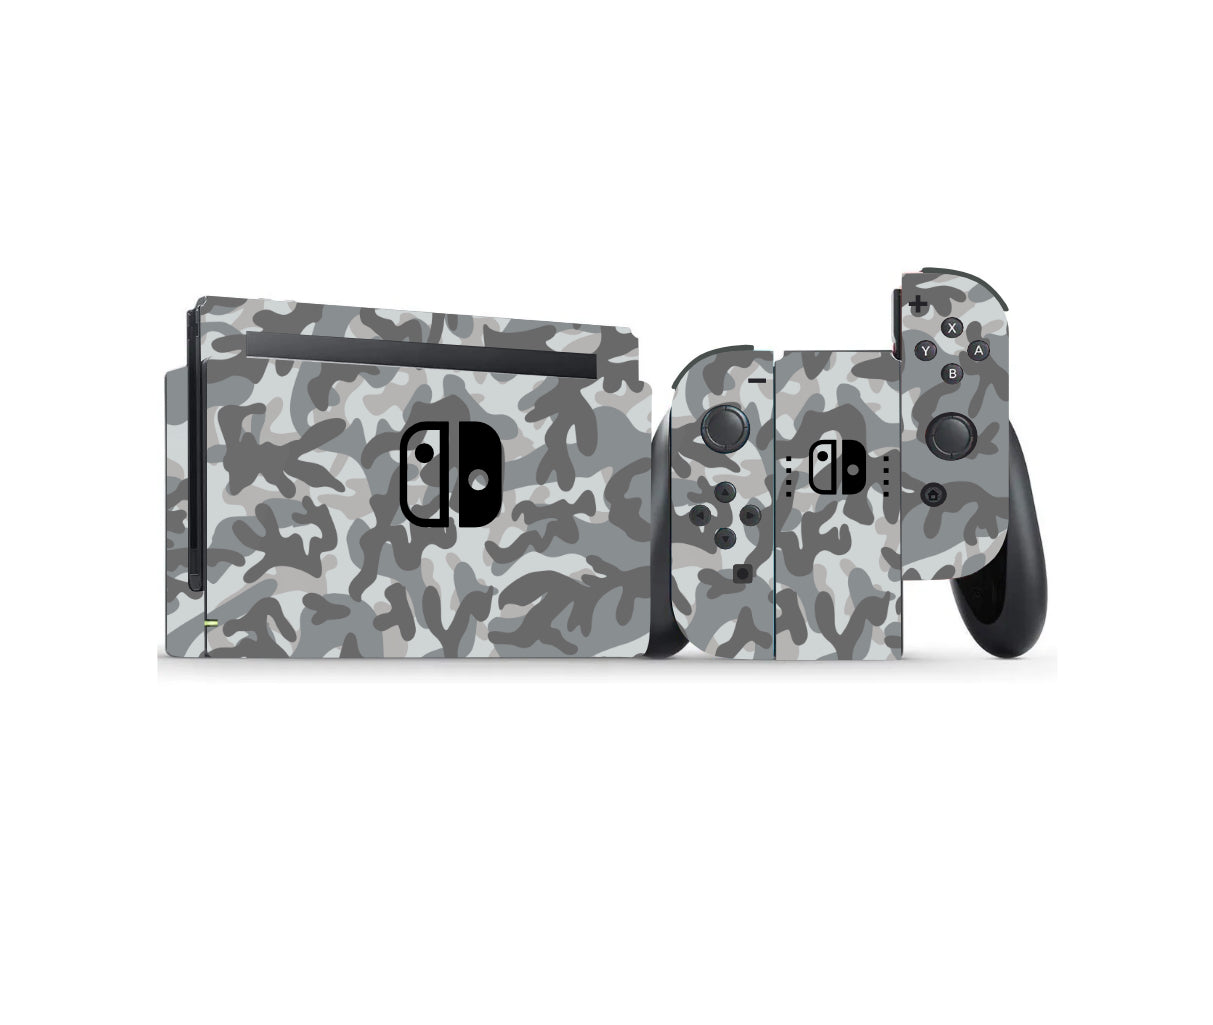 Nintendo Switch Skin Wrap – Grey Camo